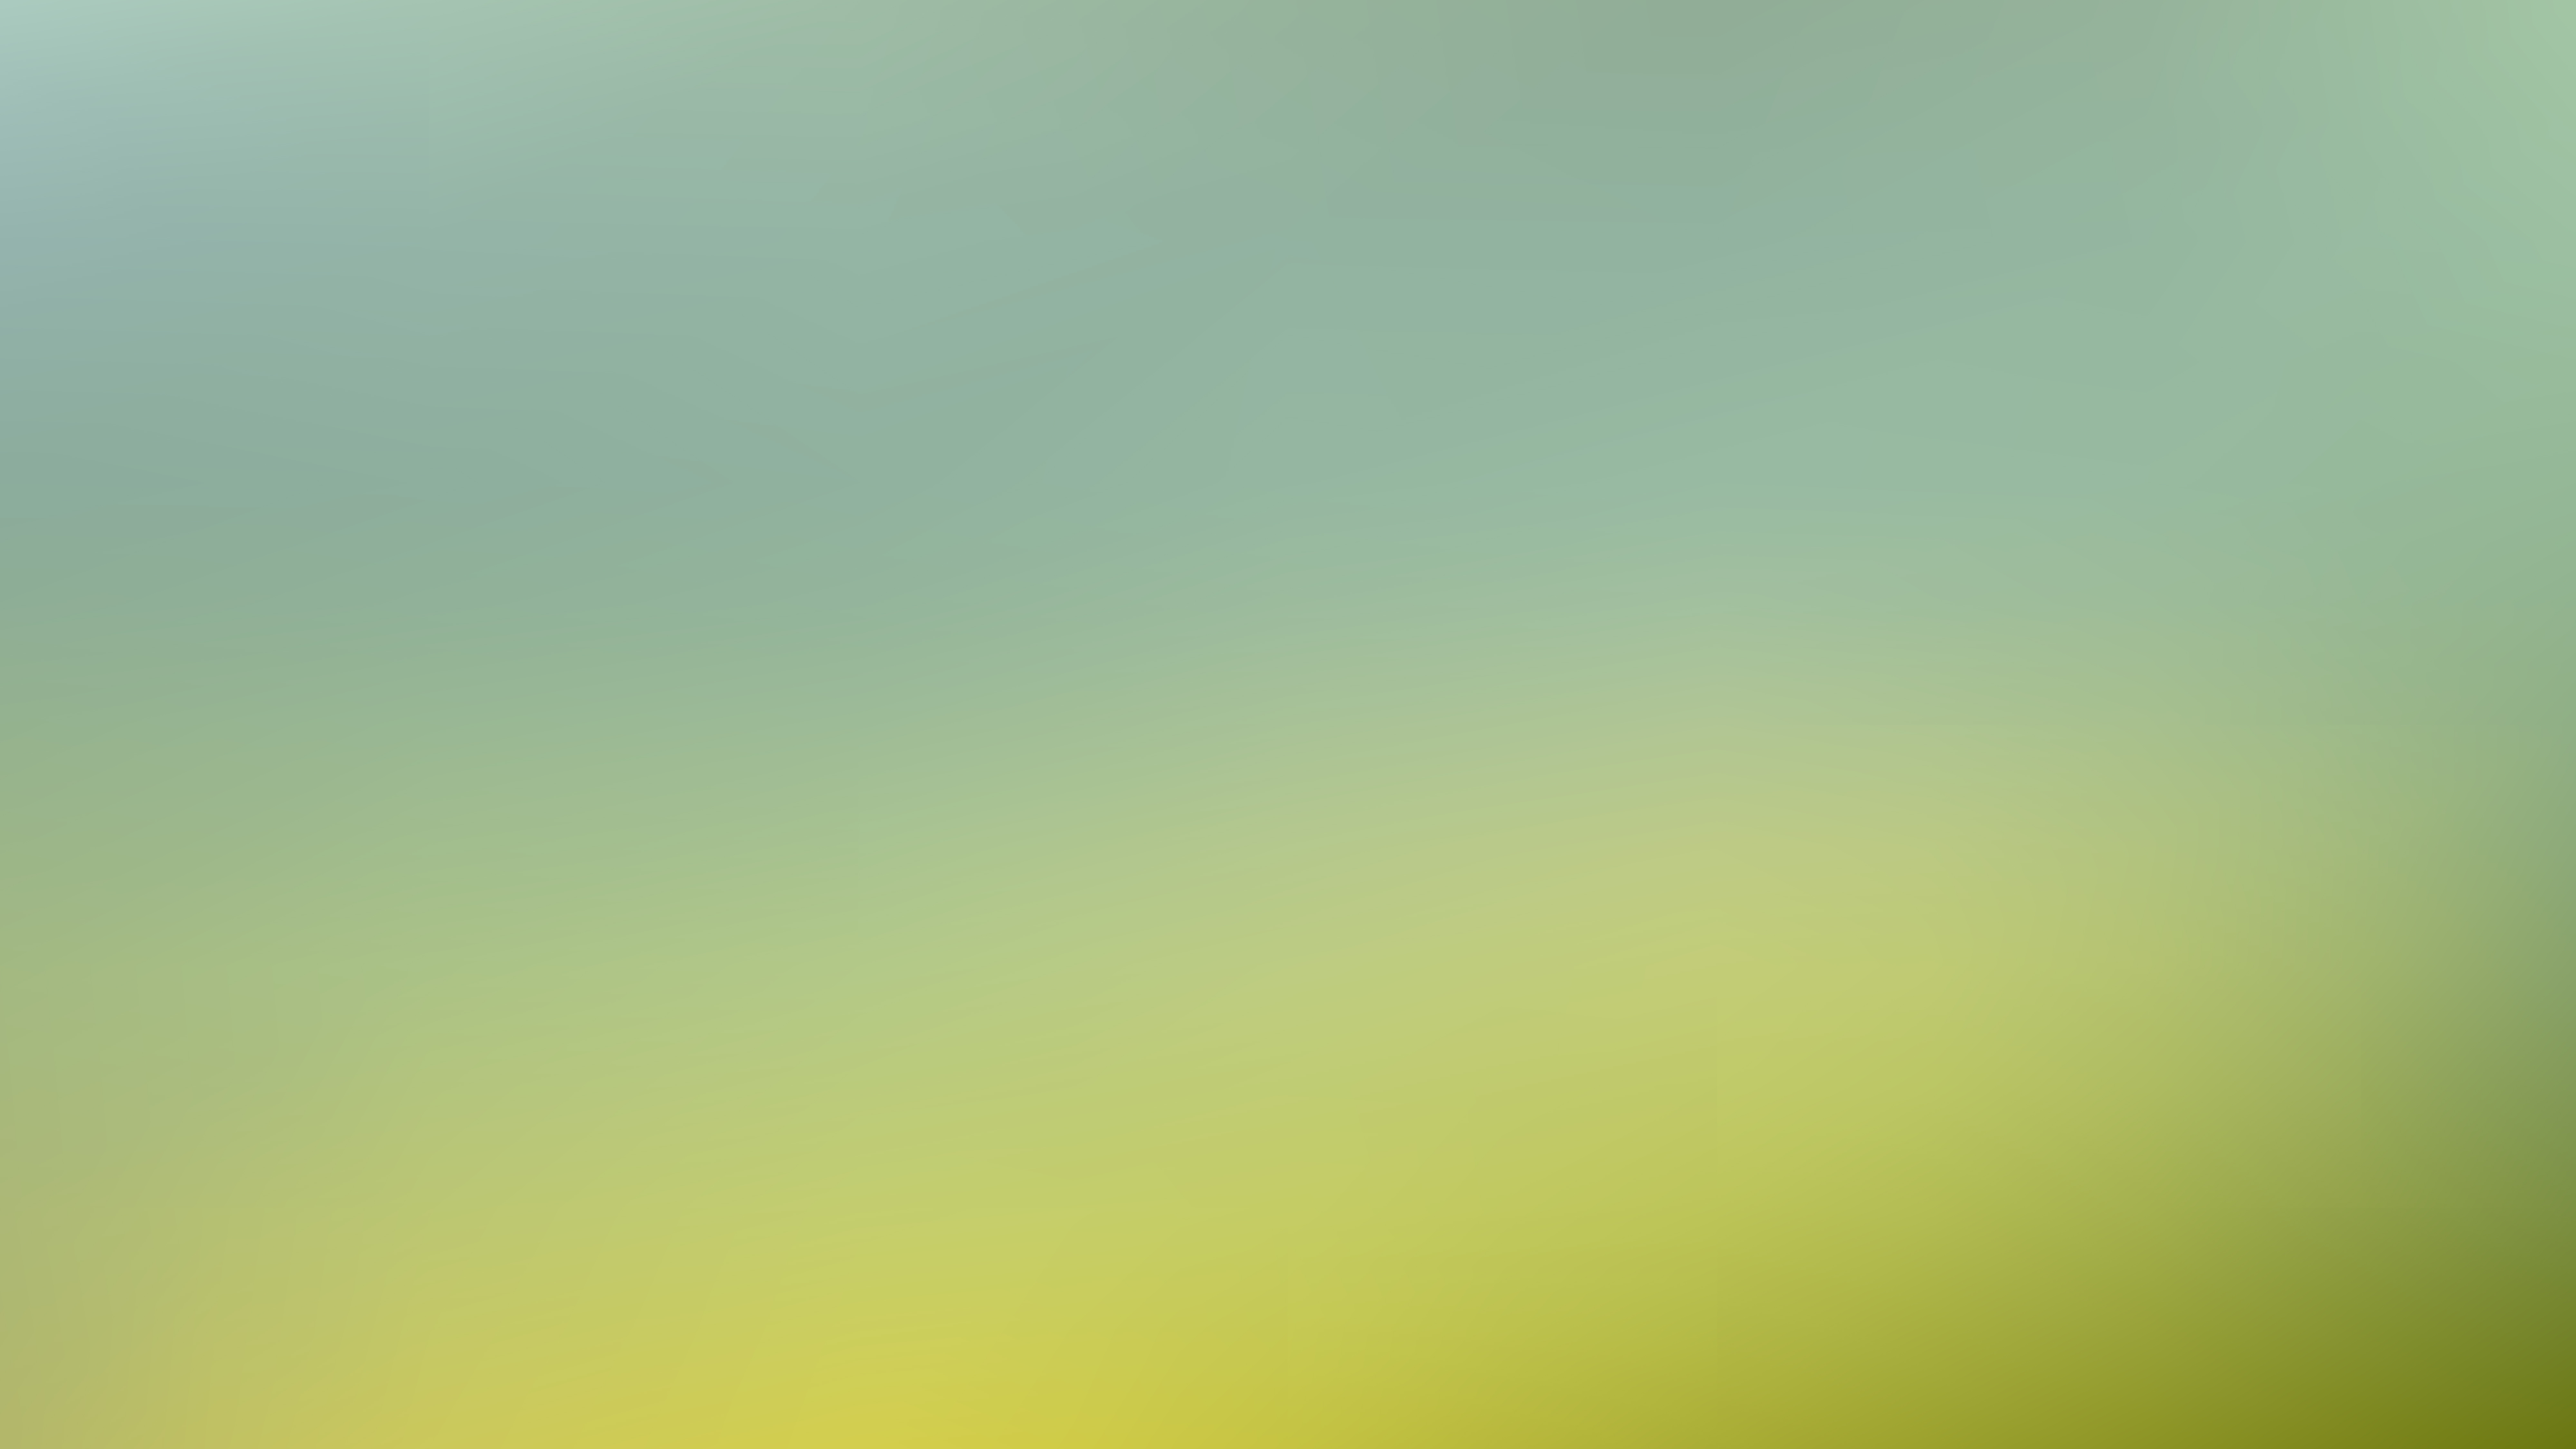 sfocatura dello sfondo,verde,giallo,giorno,cielo,turchese